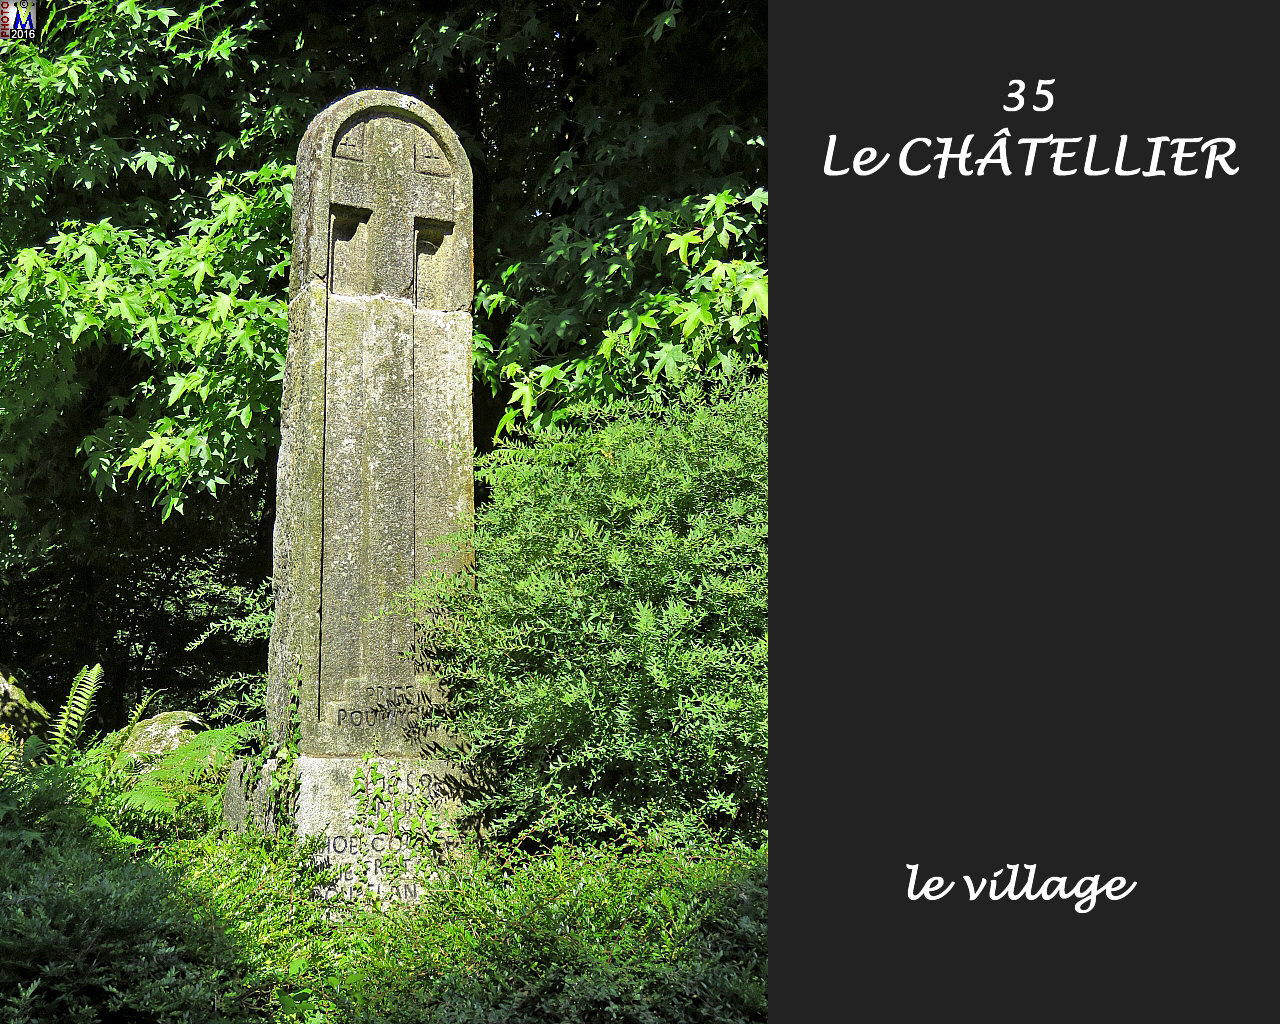 35CHATELLIER_village_106.jpg